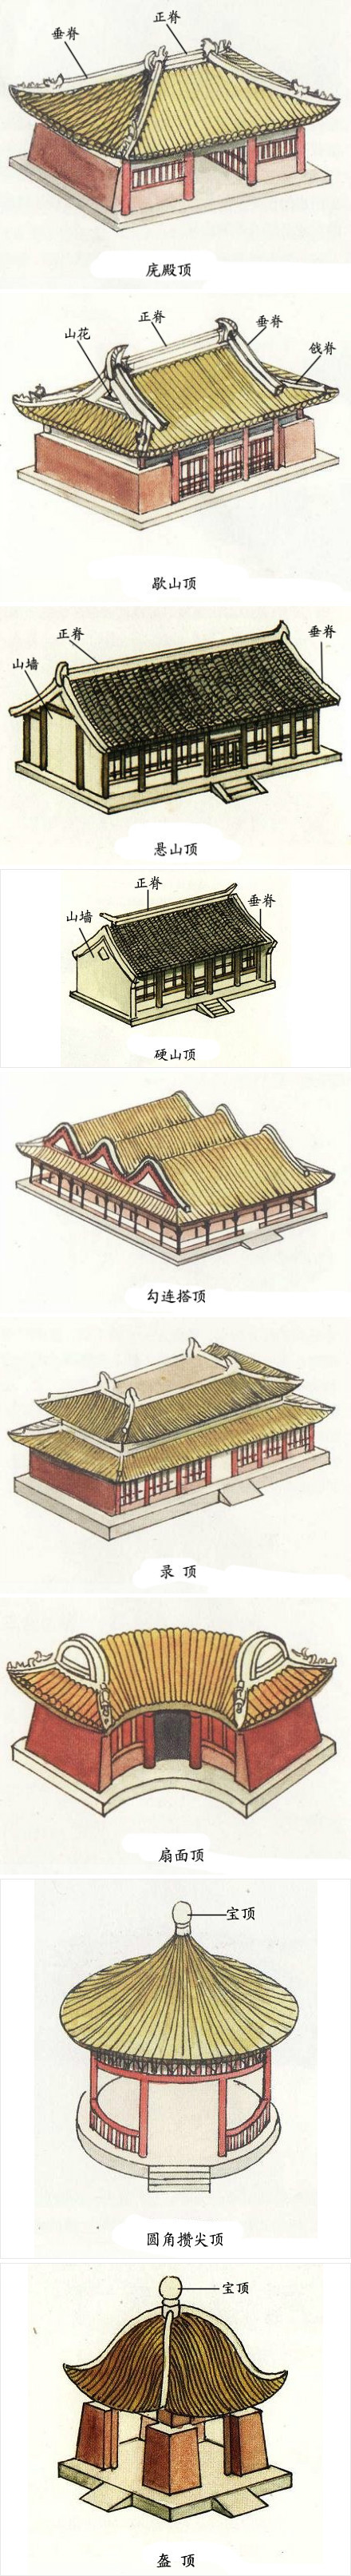 中国古建筑屋顶式样